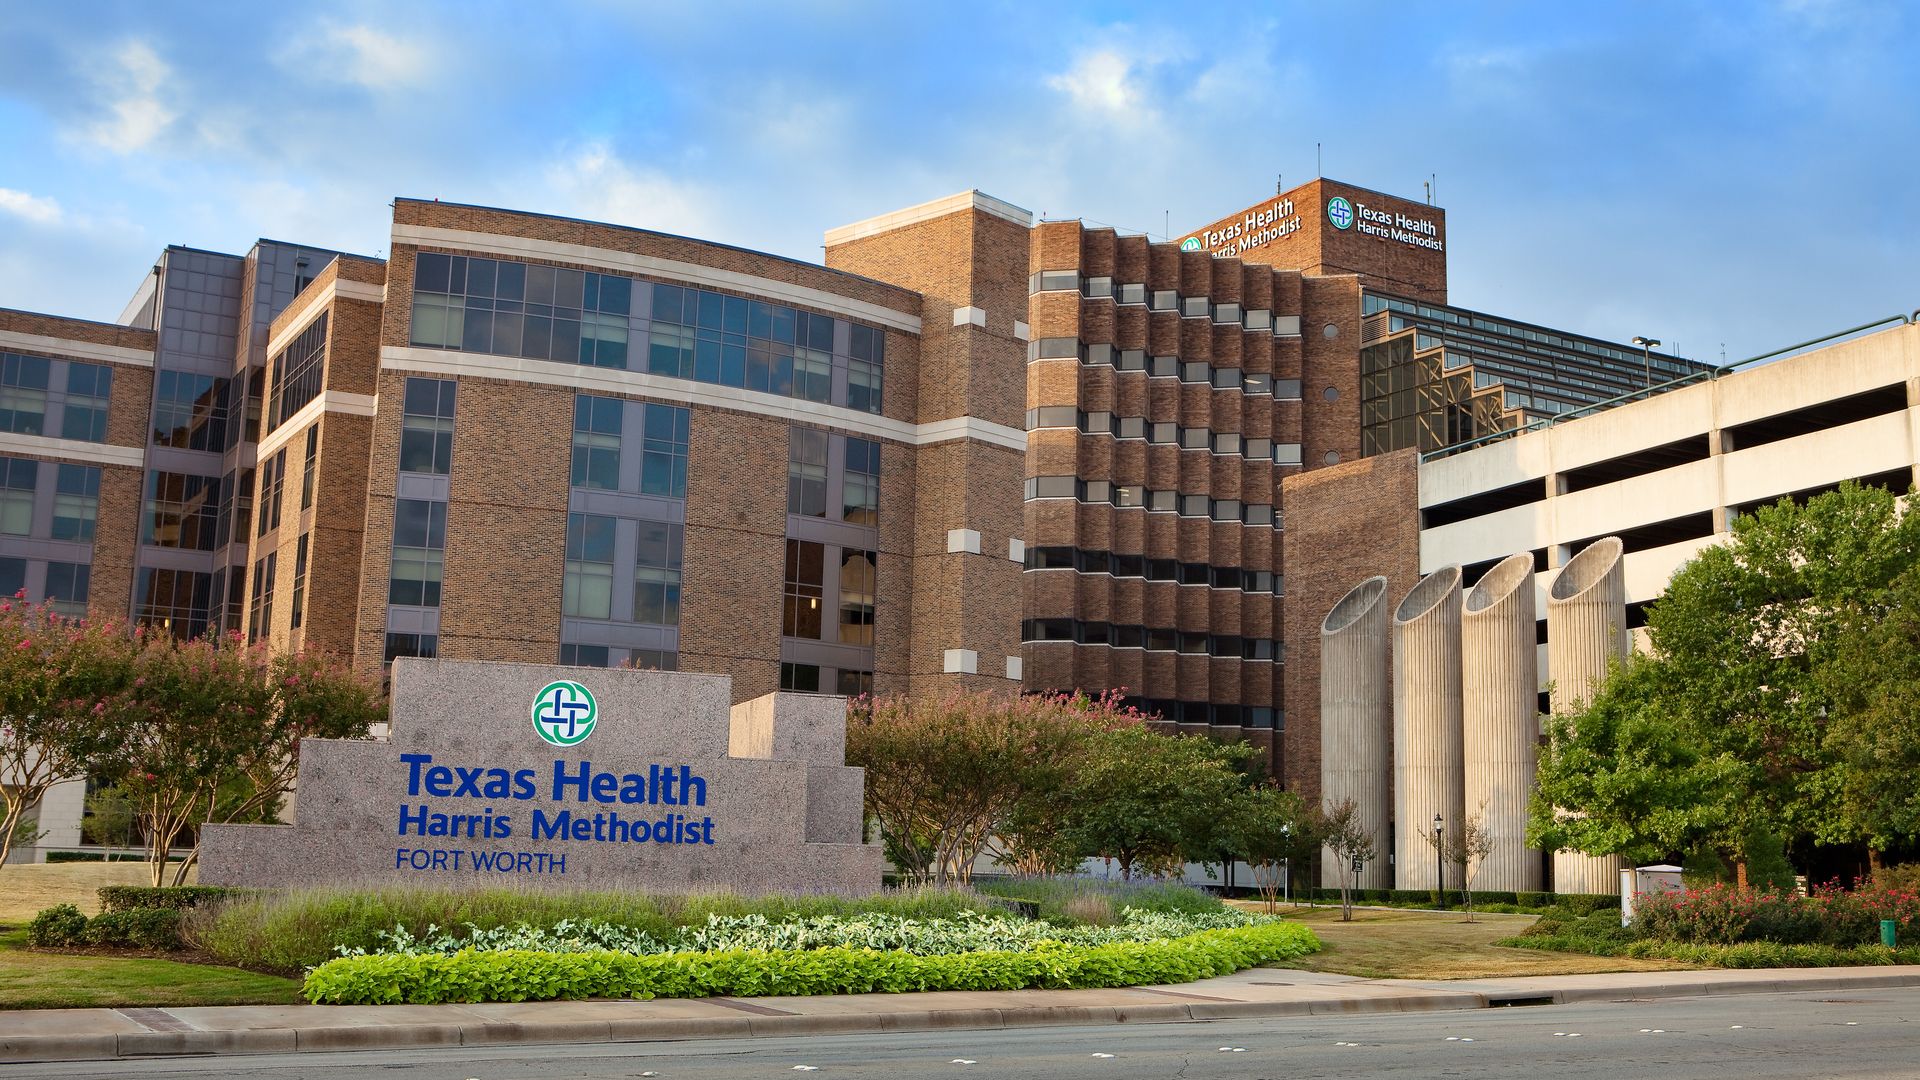 A Texas Health hospital complex on a sunny day.